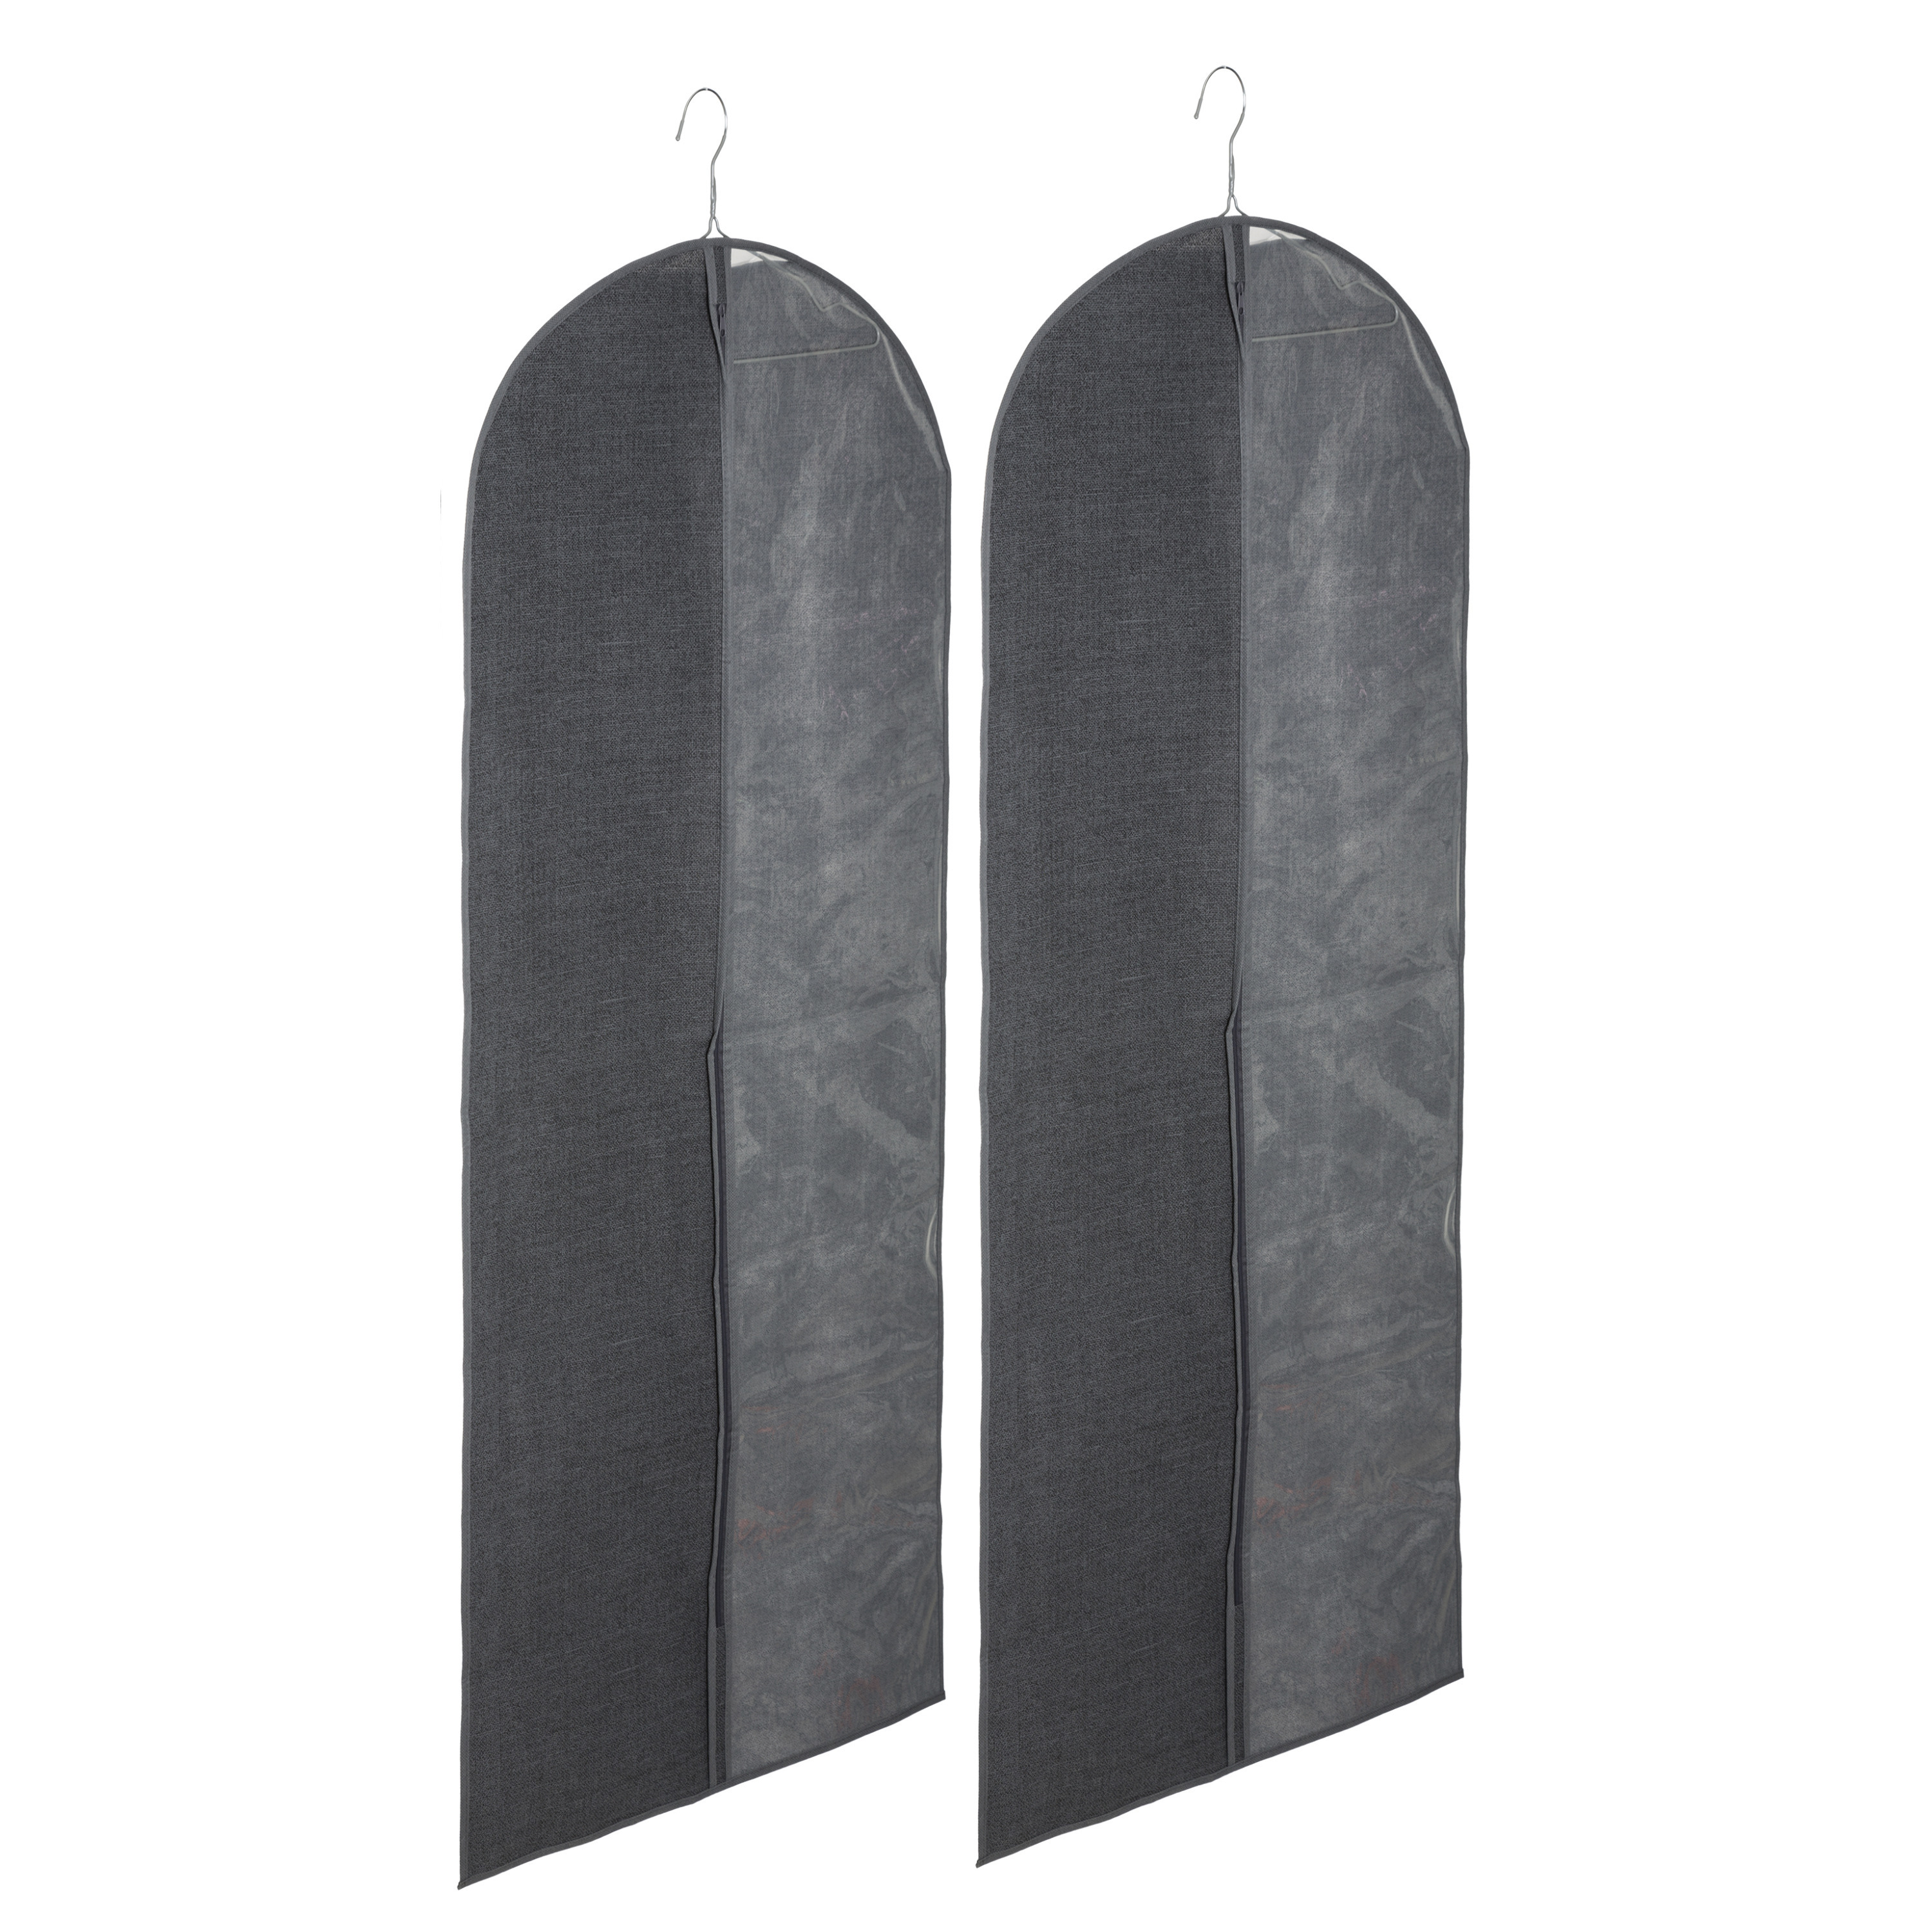 Set van 2x stuks kleding-beschermhoes linnen grijs 130 cm inclusief kledinghangers